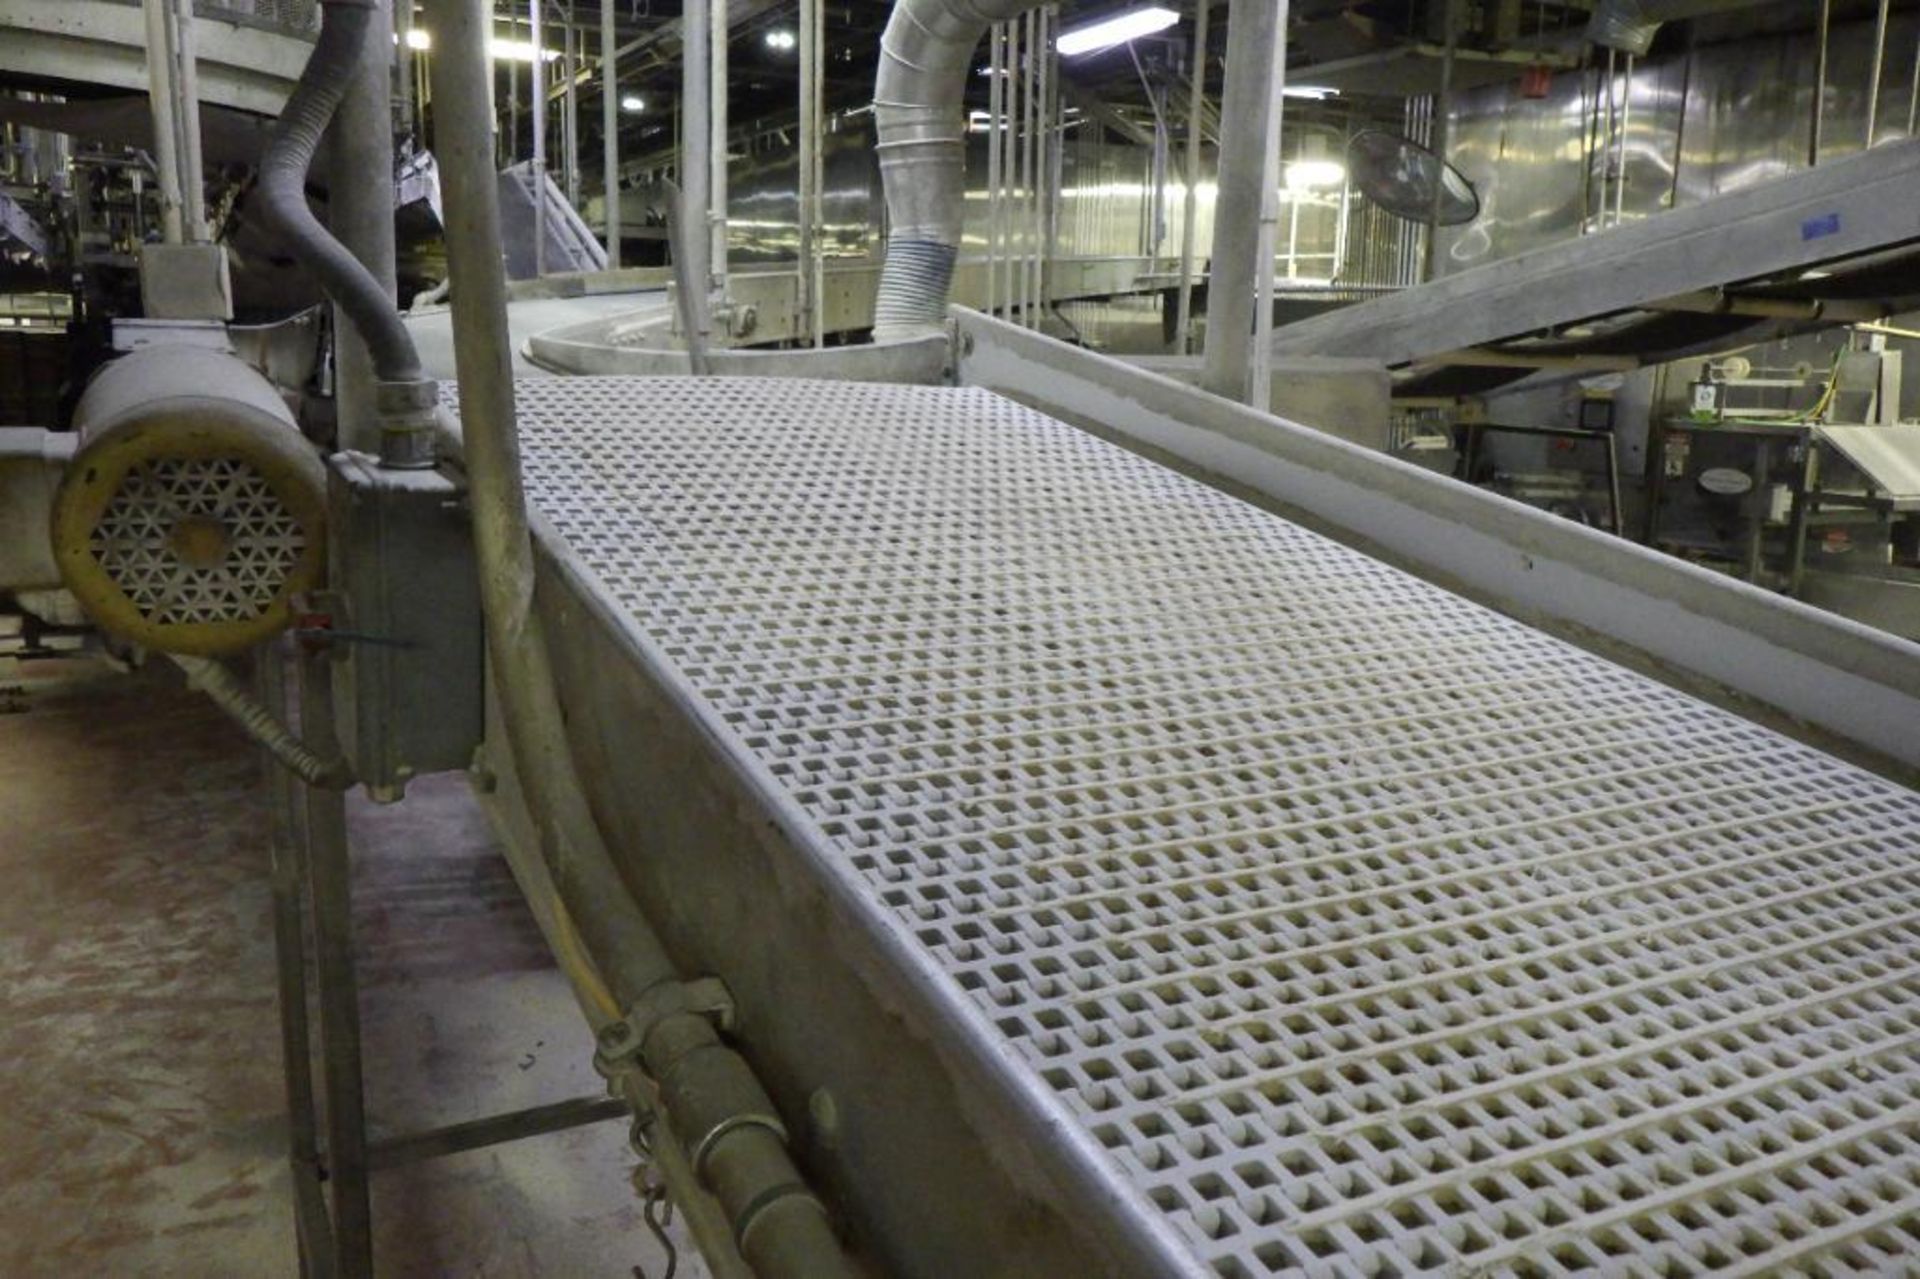 Product conveyor - Image 4 of 10